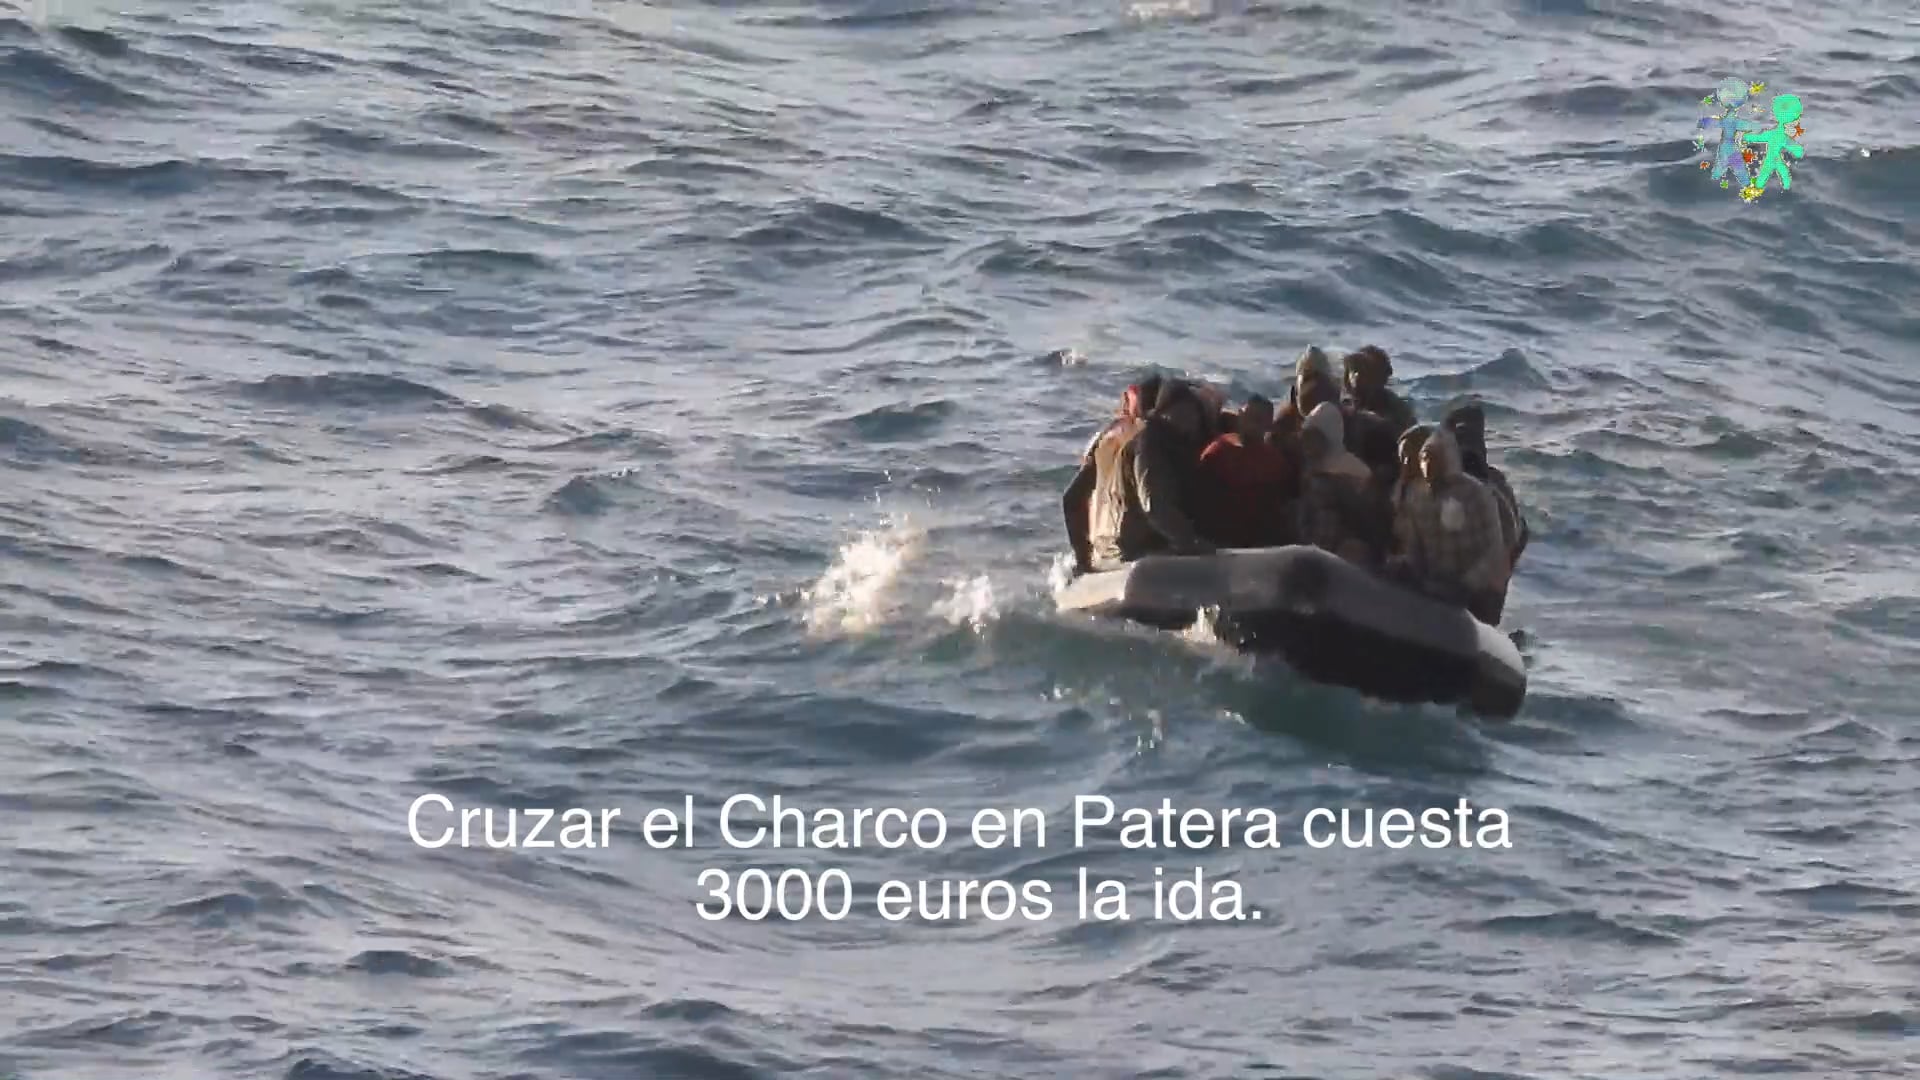 El dia 10 de Juny de 2018 van arribar a Melilla vuitanta migrants, 4 cadàvers, a través de diferents vaixells del SAR.És impressionant la quantitat de xavals que es llencen al mar per passar a Europa davant la falta d·un lloc de pas segur. El Govern Espanyol és responsable en gran mesura d·aquesta situació.